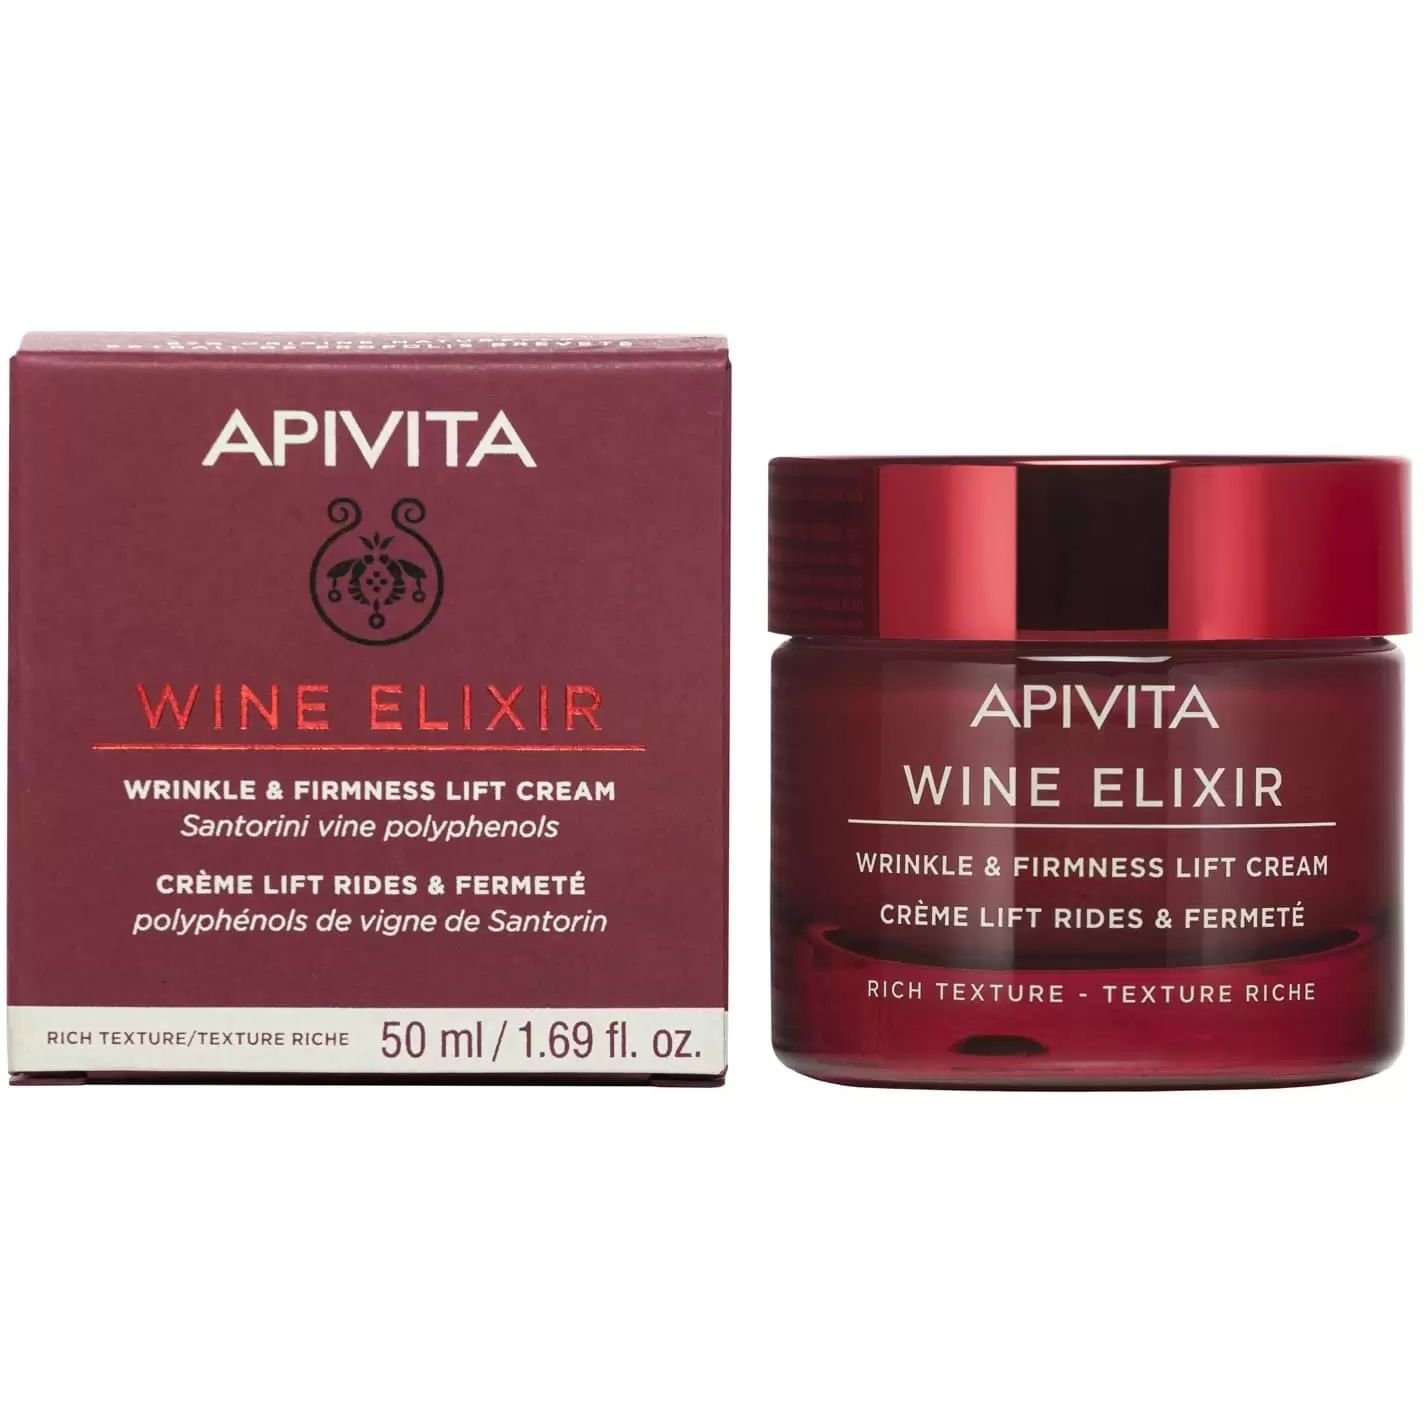 Крем-ліфтинг насиченої текстури Apivita Wine Elixir для боротьби зі зморшками та підвищення пружності, 50 мл - фото 2